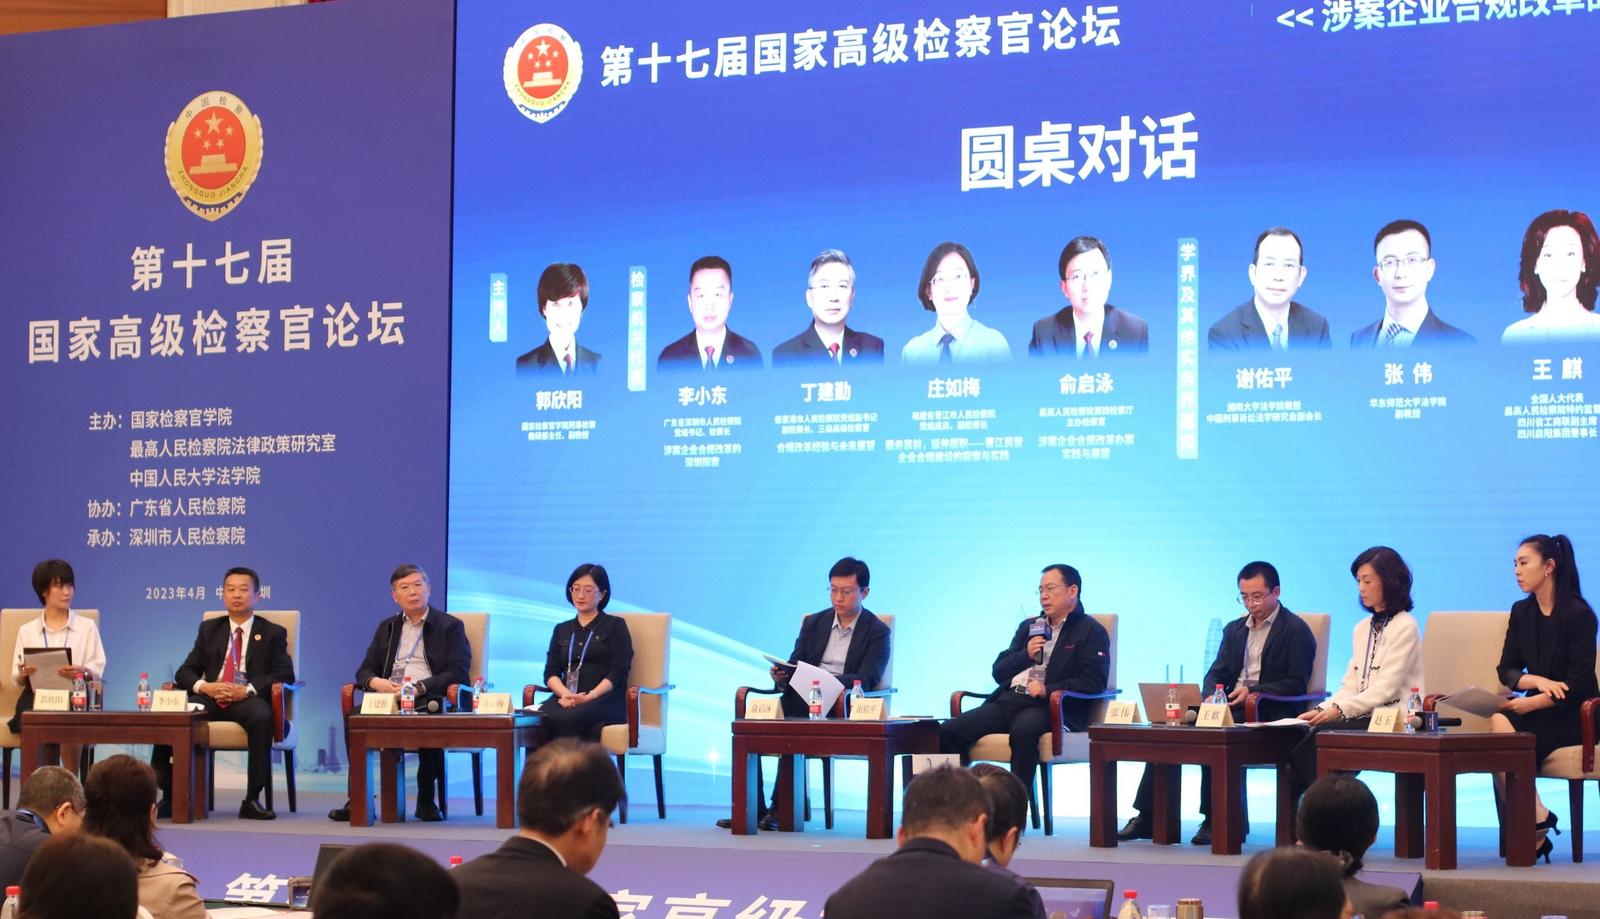 聚焦涉案企业合规制度 第十七届国家高级检察官论坛在深圳召开